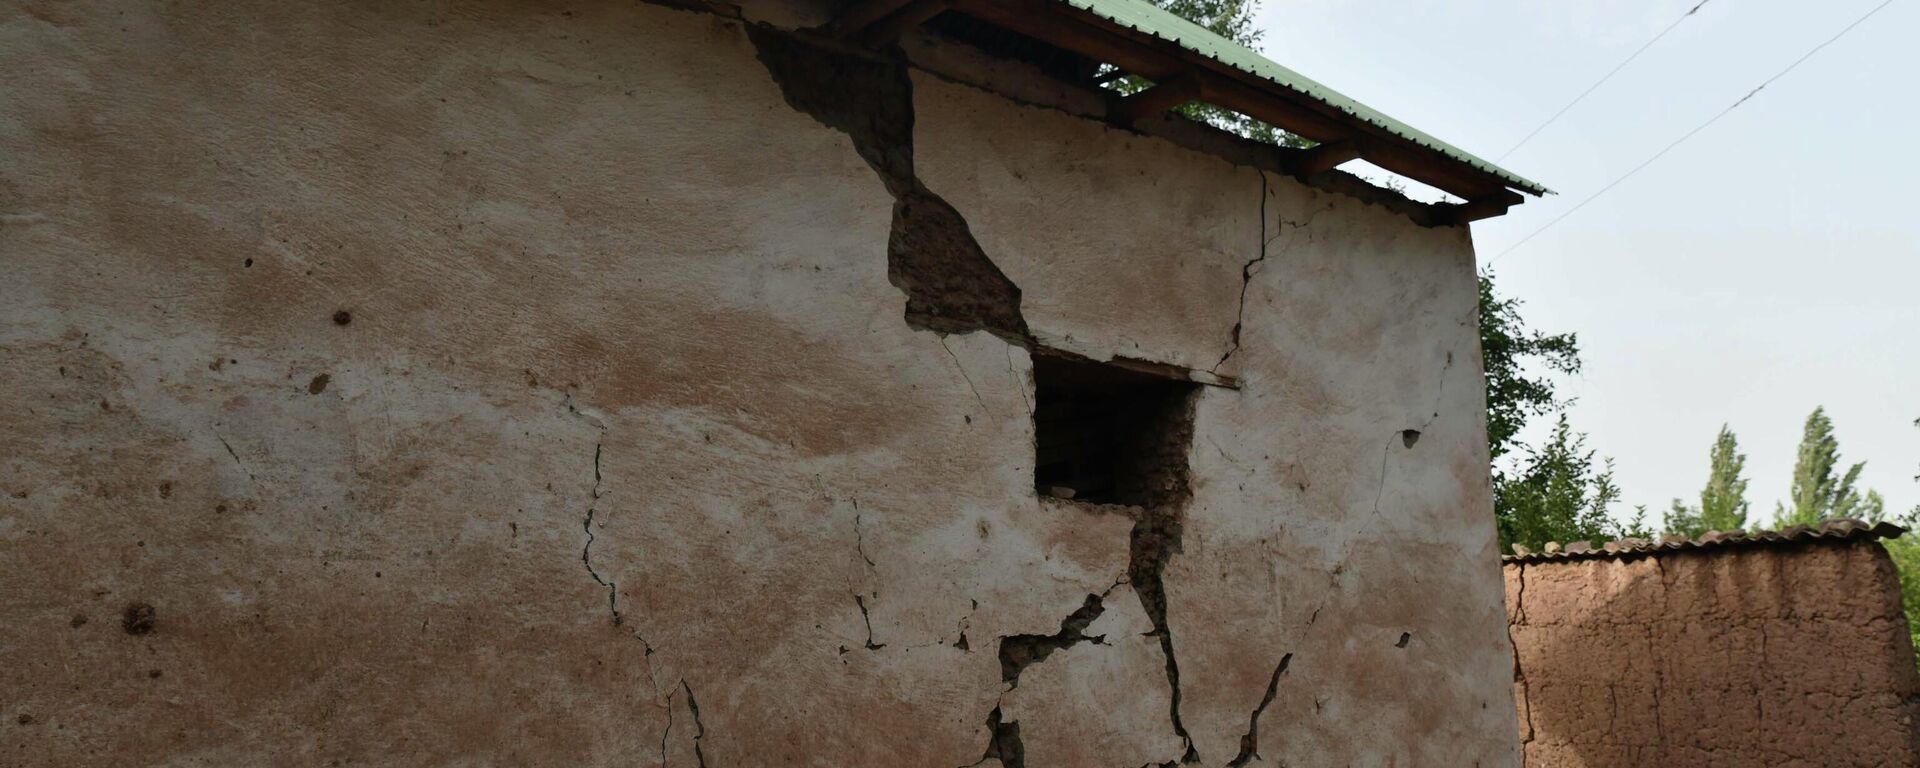 Последствия землетрясения в Лангари Шох - Sputnik Таджикистан, 1920, 13.07.2021